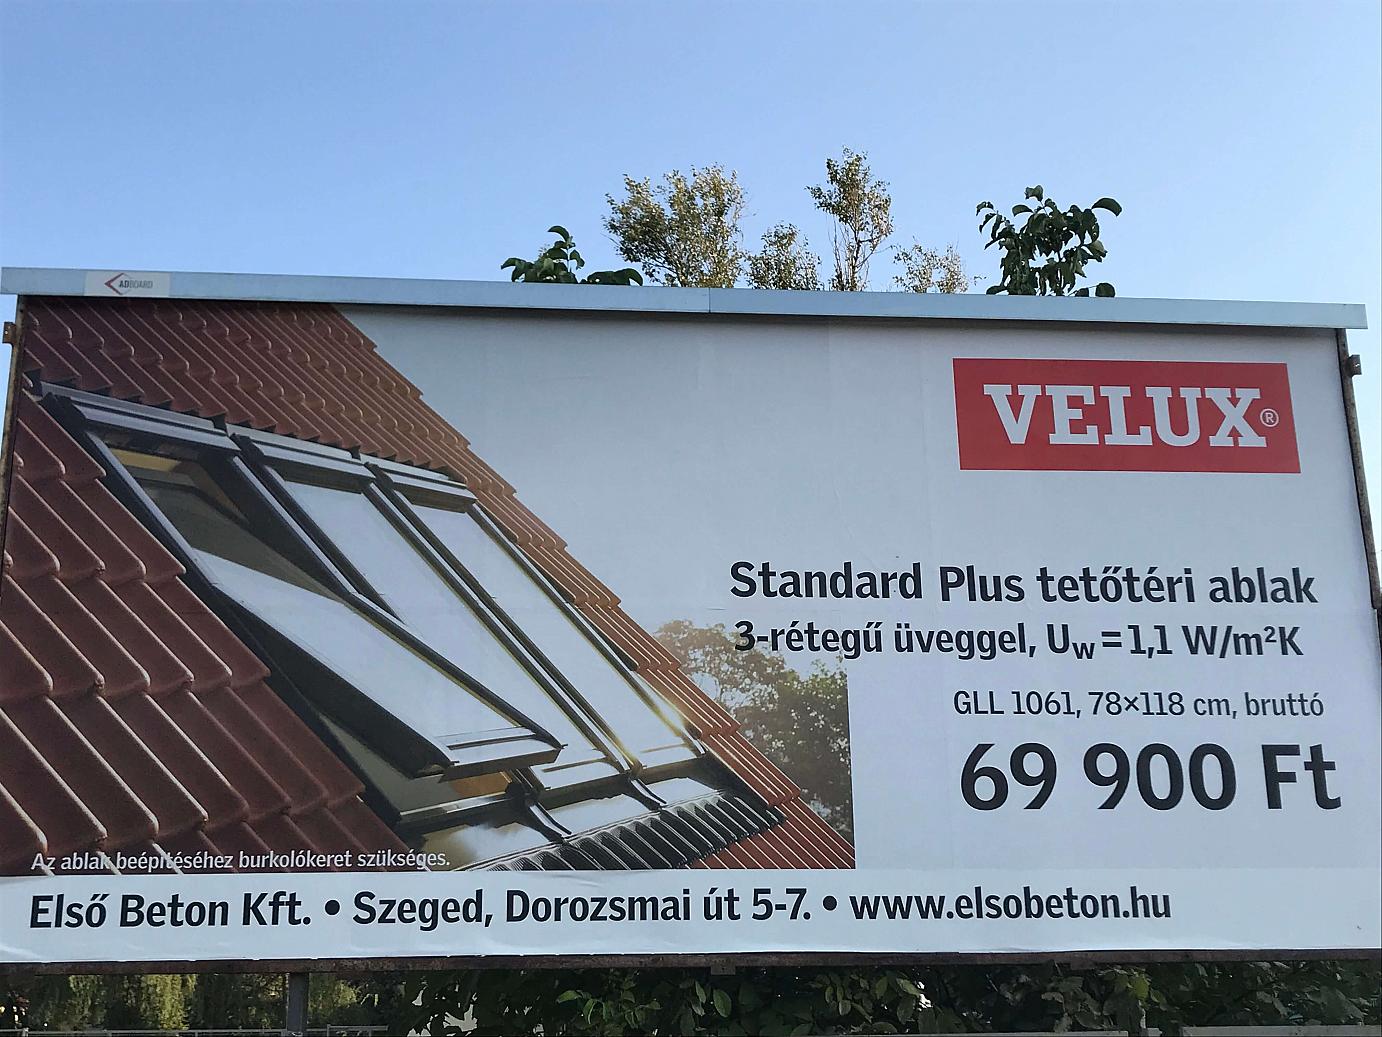 Velux tetőtéri ablak akció az Első Betonnál | Első Beton Kft.